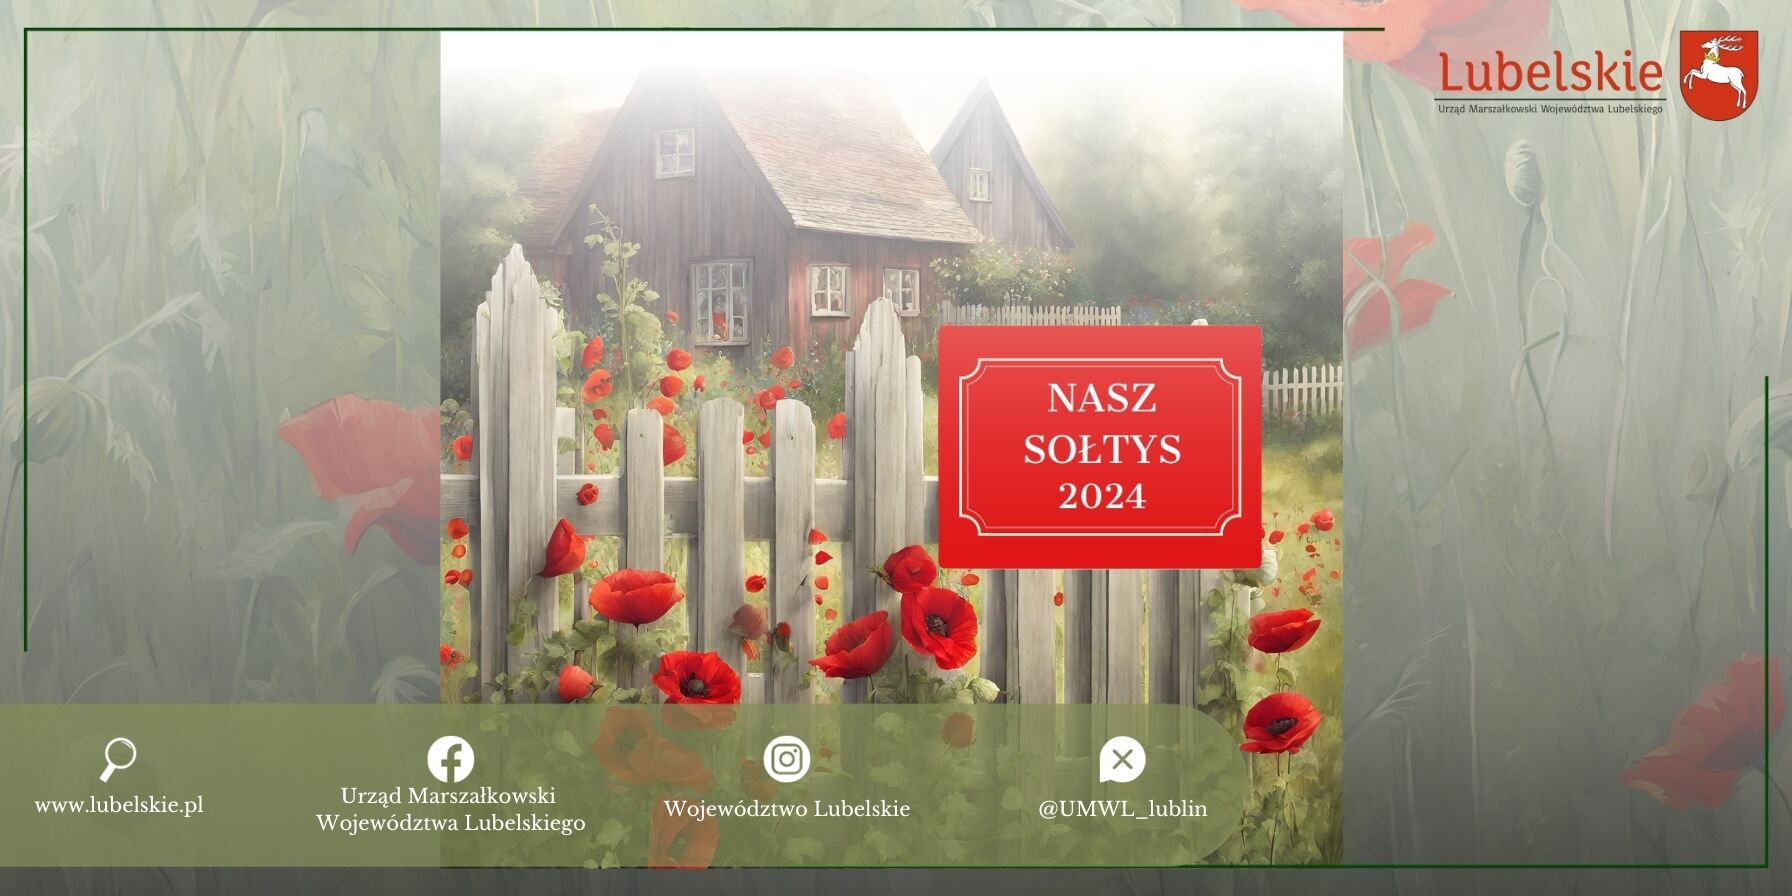 Obraz przedstawia sielankowy wiejski krajobraz z drewnianym domem za białym płotem i czerwonymi makami na pierwszym planie. Widoczne logo regionu Lubelskiego i napis "NASZ SOŁTYS 2024".